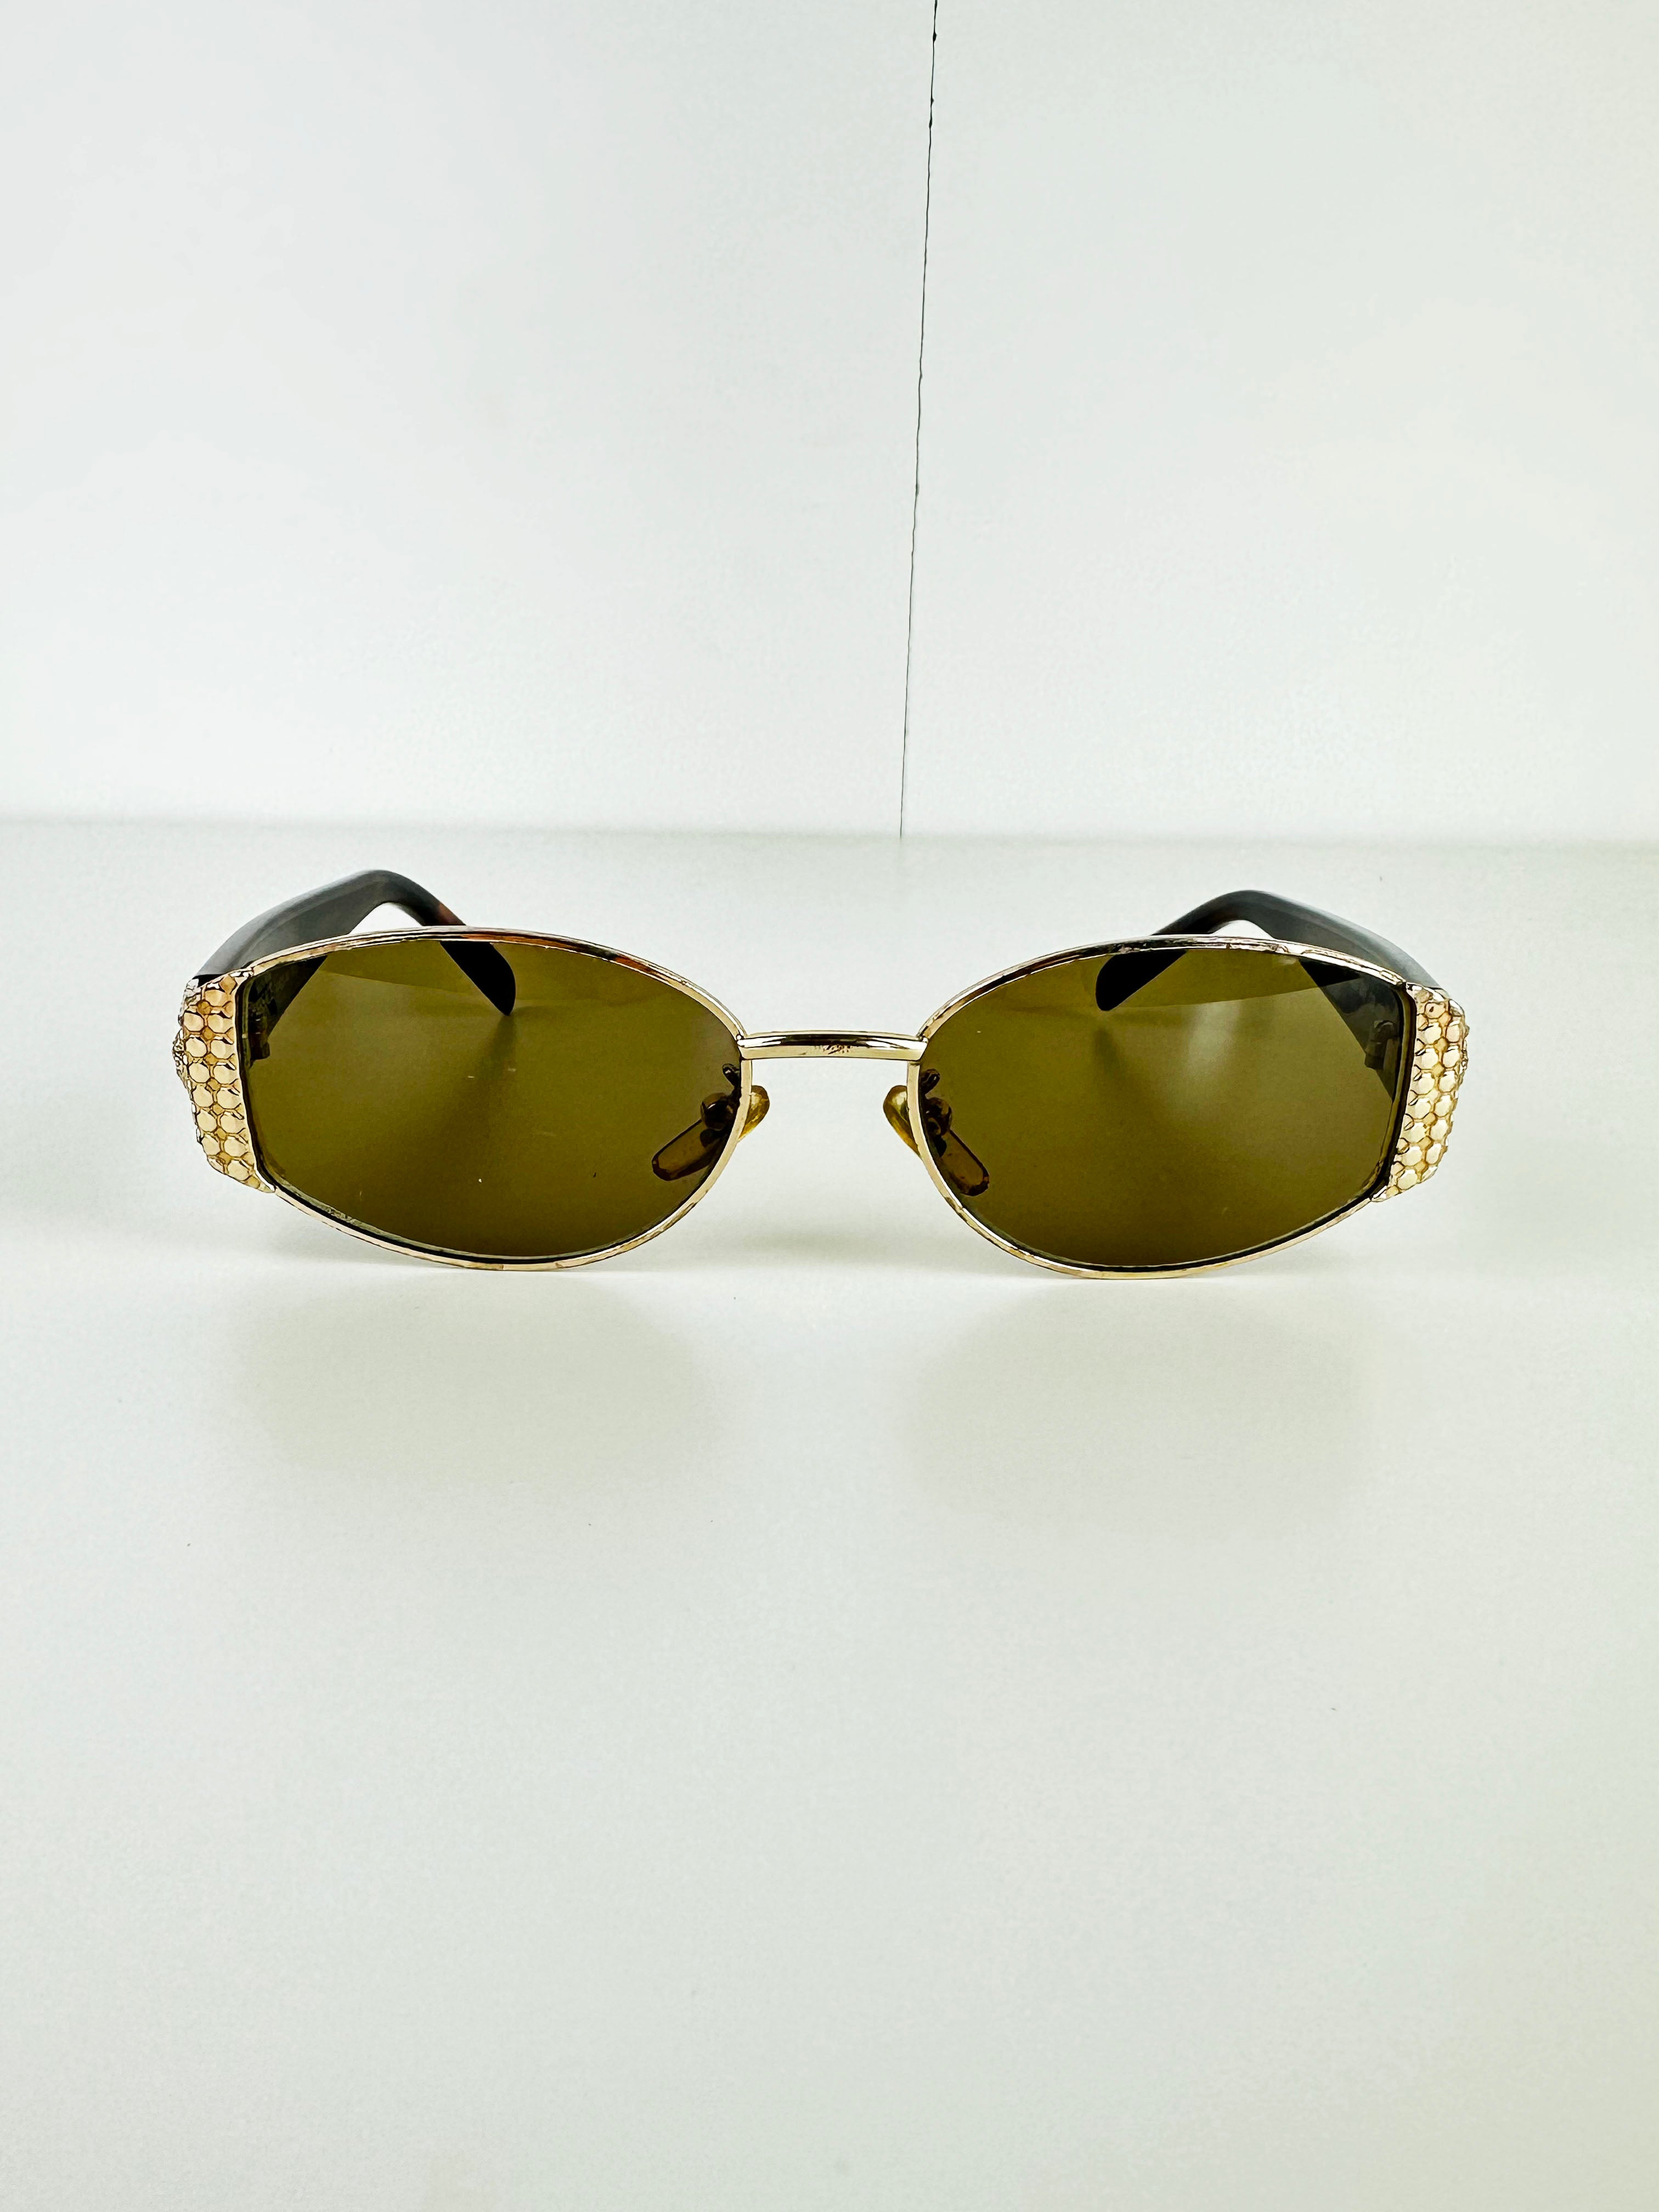 Versace Medusa Tortoise Shell Gold Sunglasses 90's